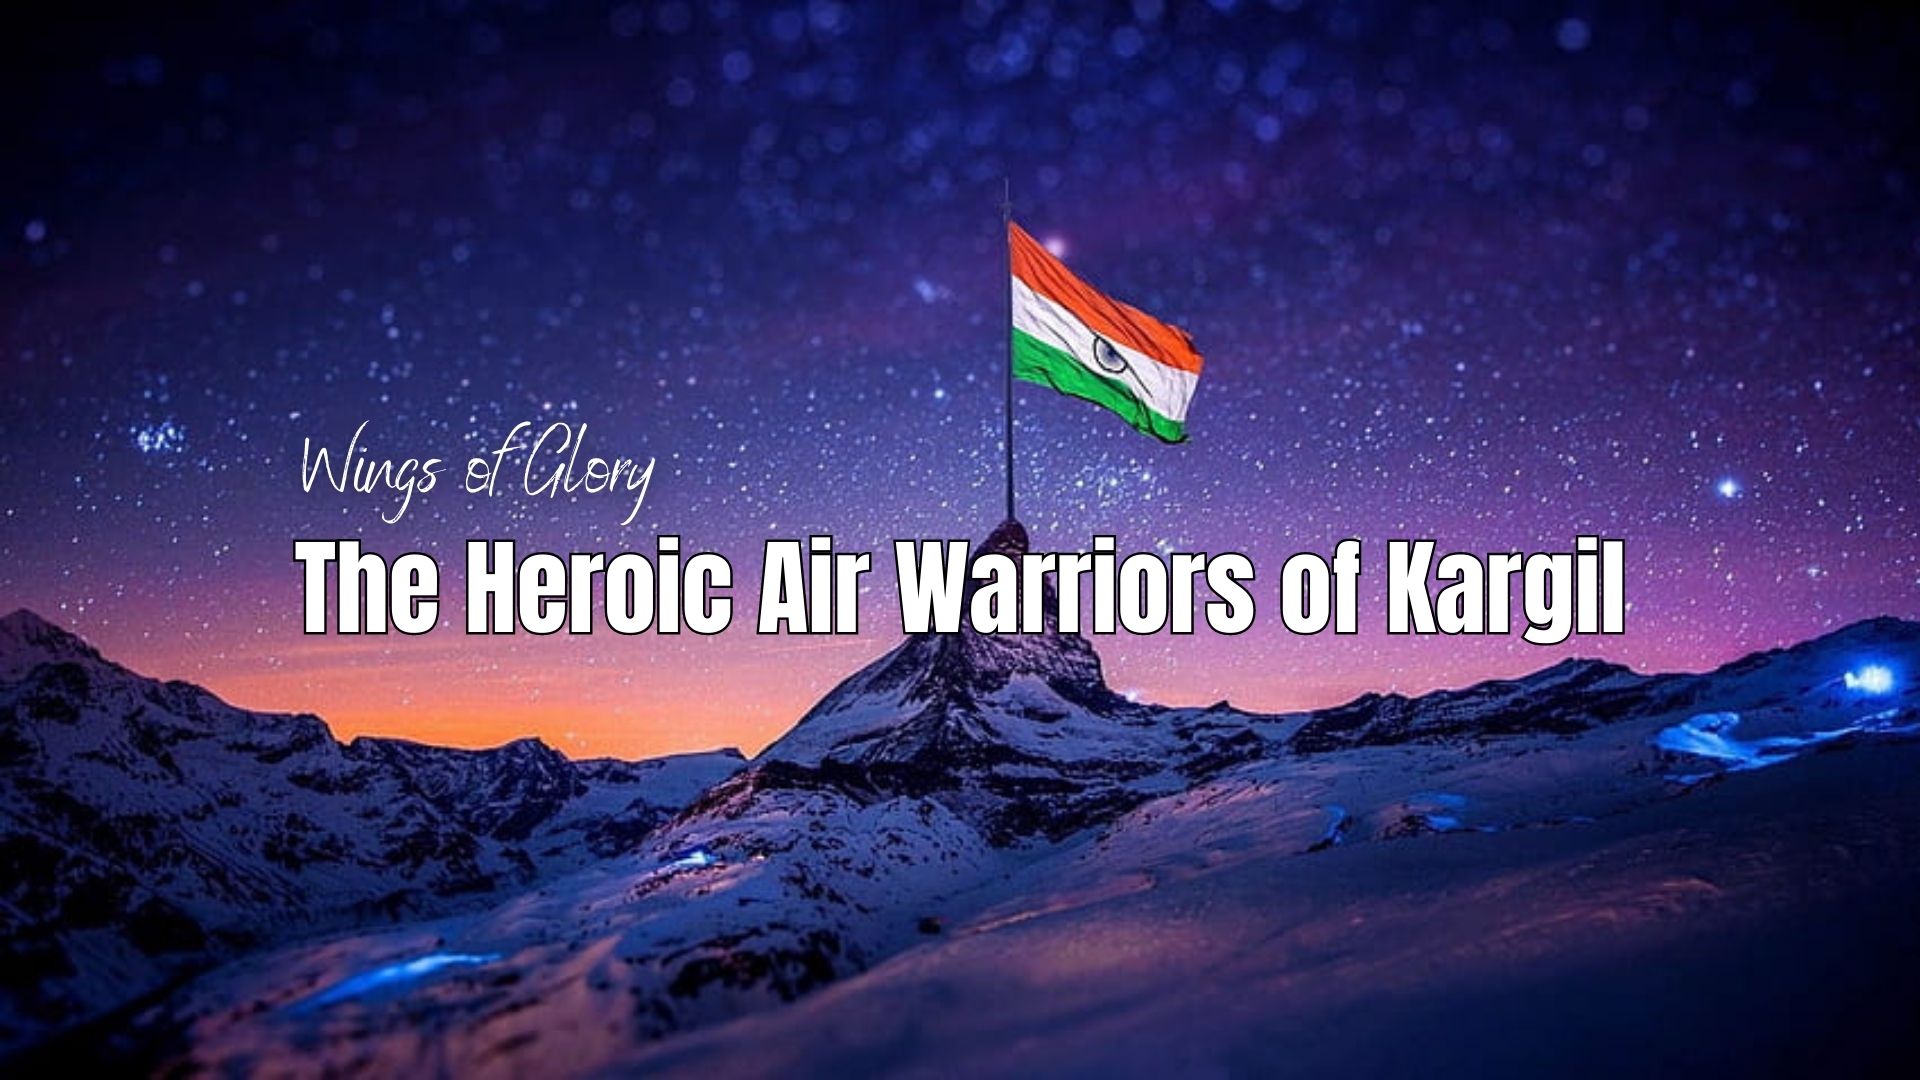 Wings of Glory - The Heroic Air Warriors of Kargil